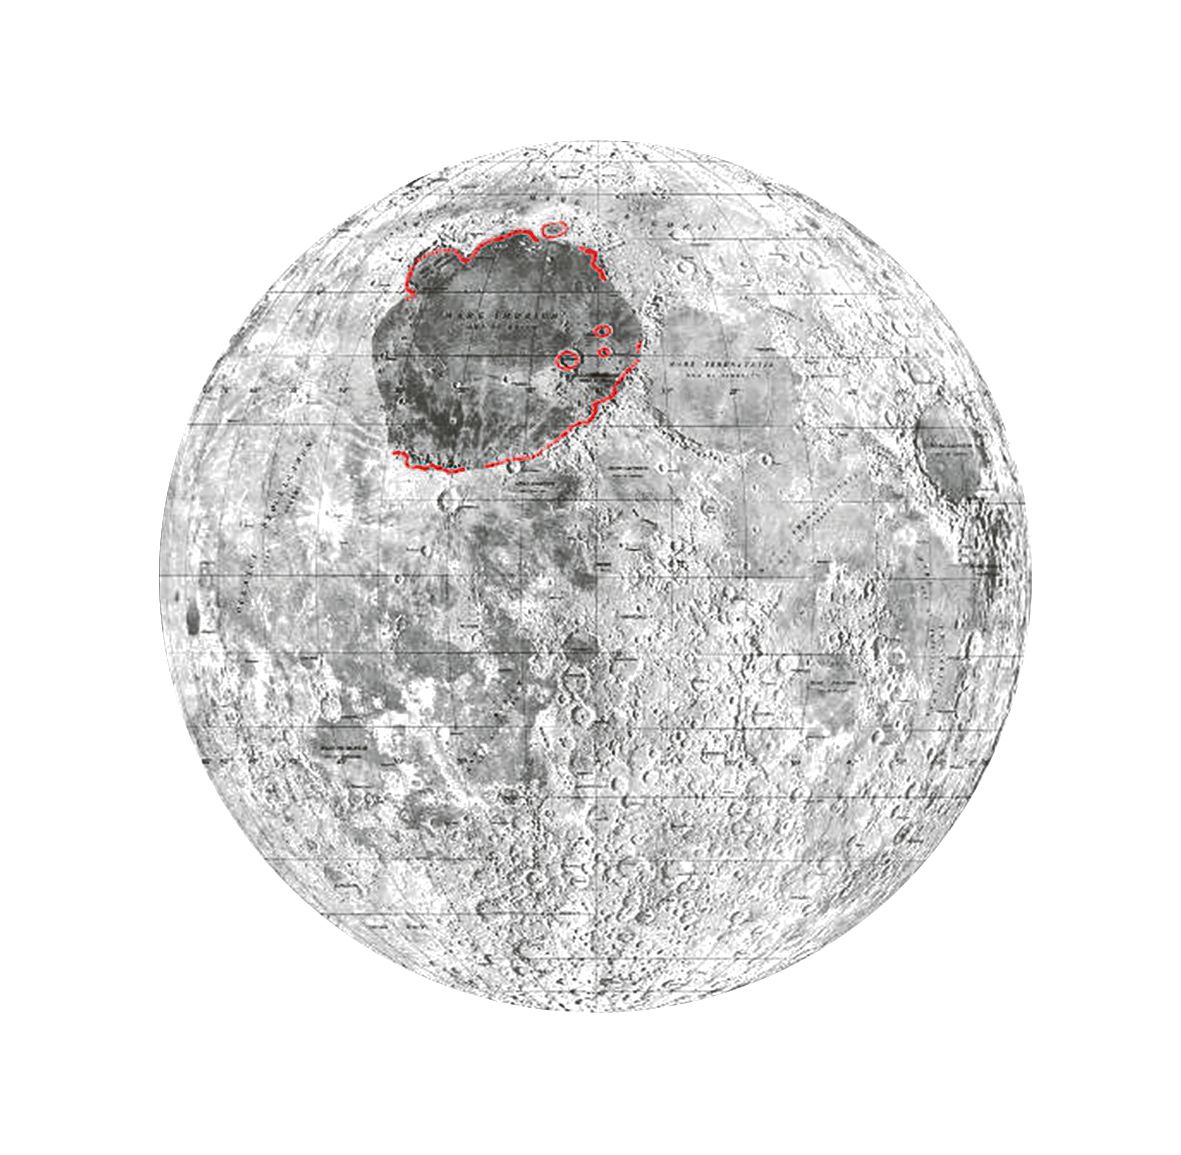 Mare Imbrium is de donker gemaakte vlek op deze maanatlas. Het is de op een na grootste inslagkrater op de maan.